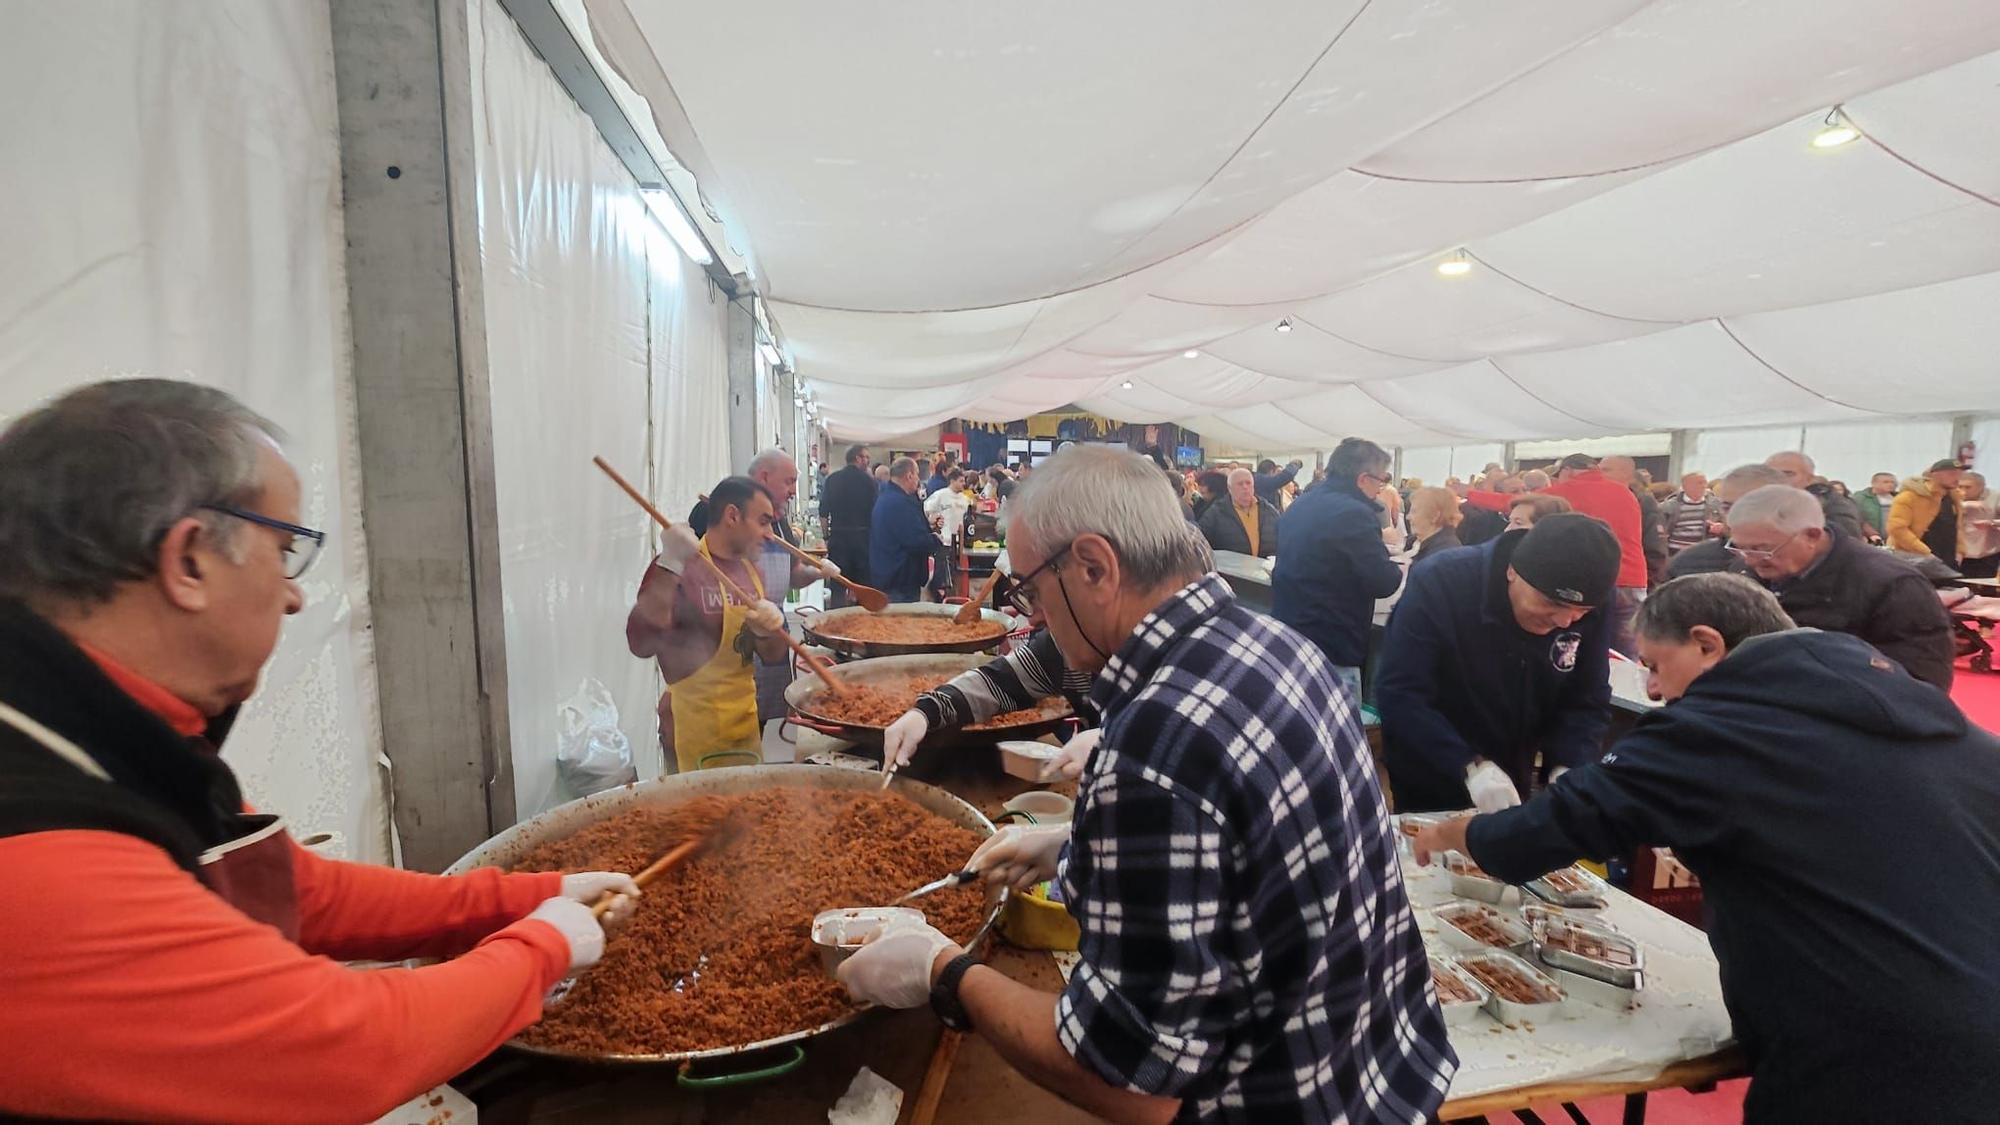 Así es la comida popular de las fiestas de Santa Bárbara en Mieres, con 210 kilos de picadillo